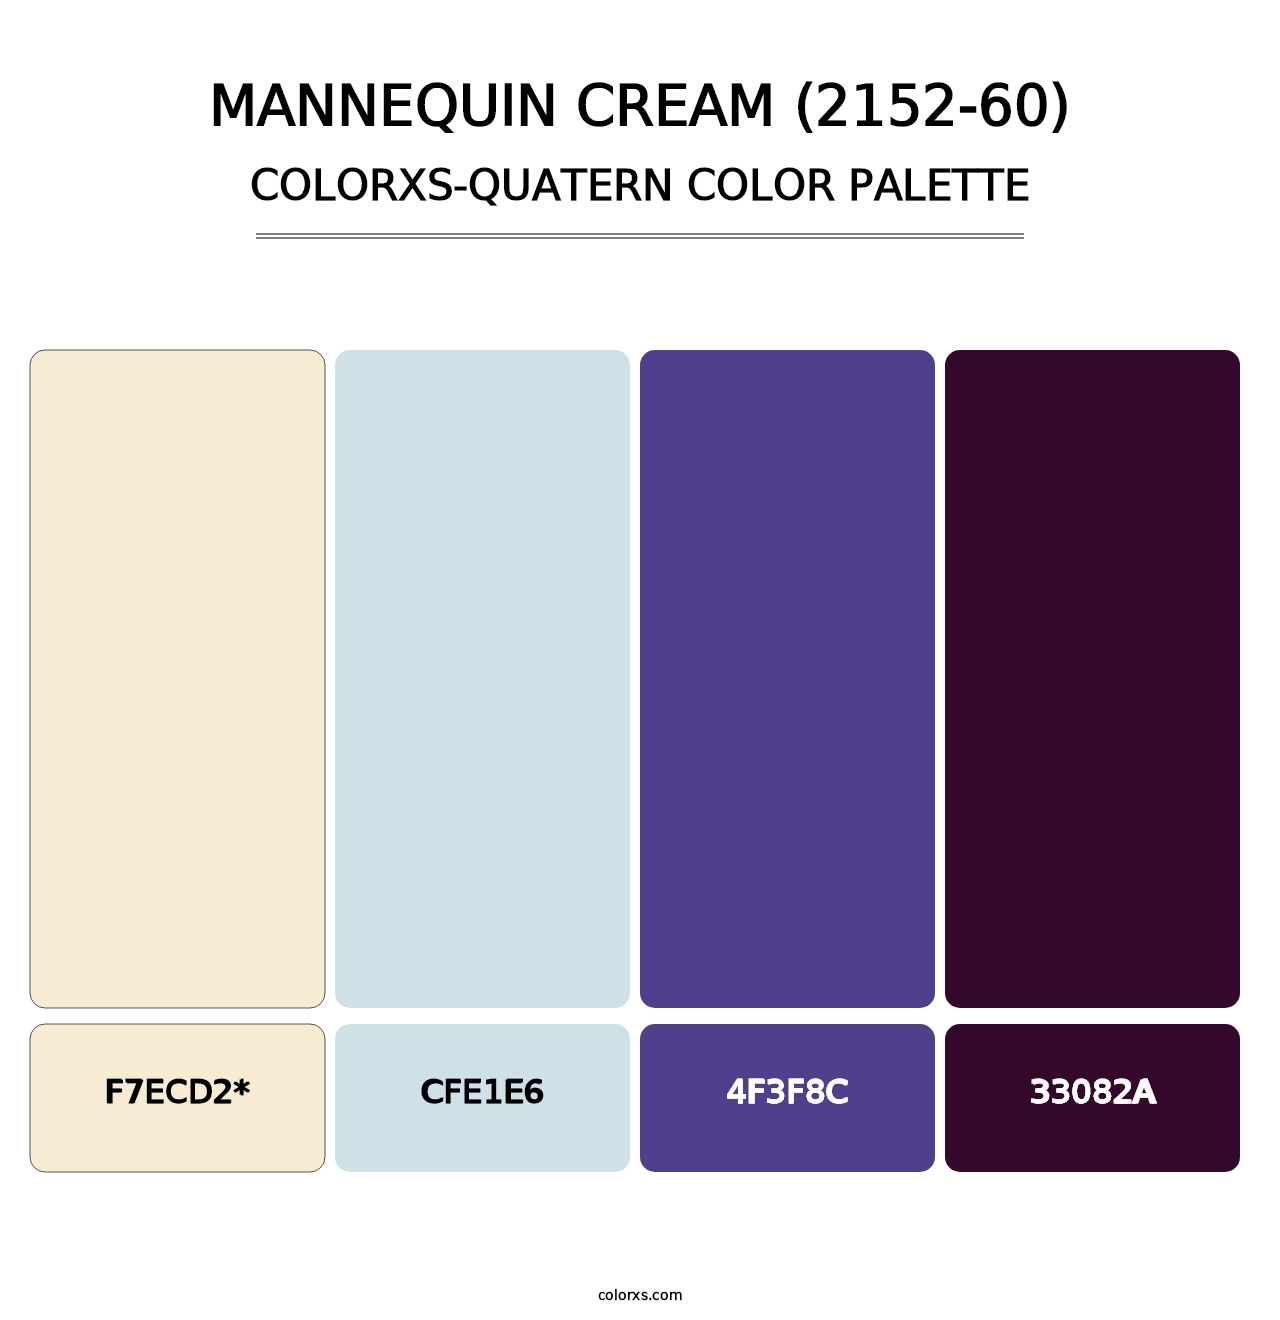 Mannequin Cream (2152-60) - Colorxs Quatern Palette